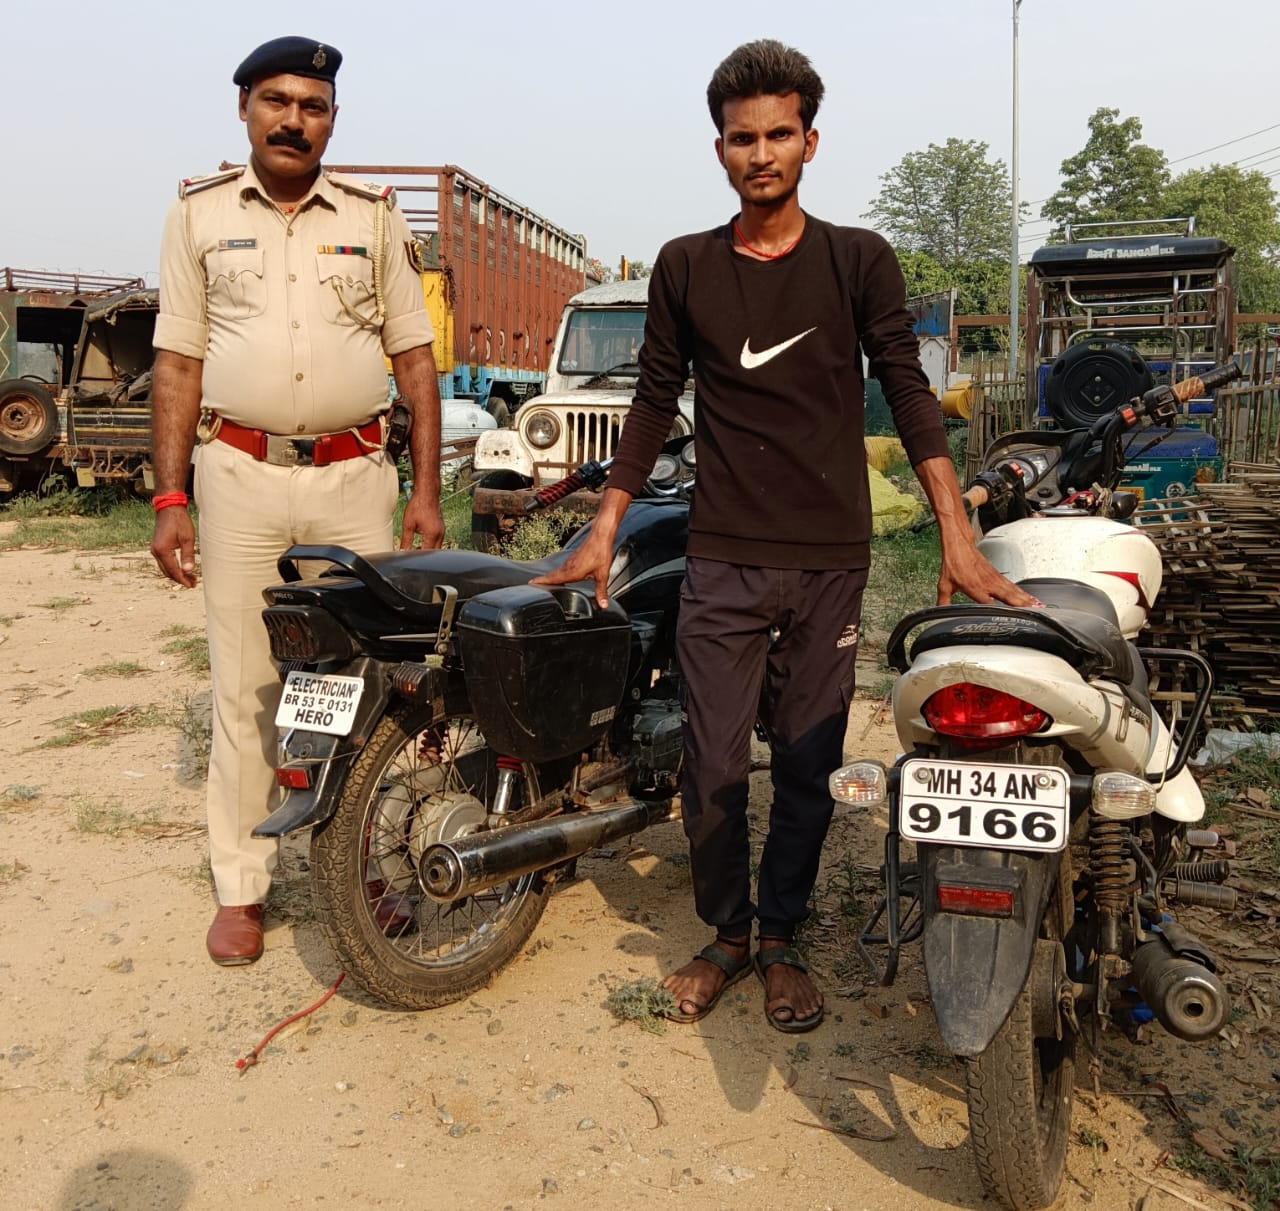 चोरी के दो बाइक के साथ एक युवक गिरफ्तार